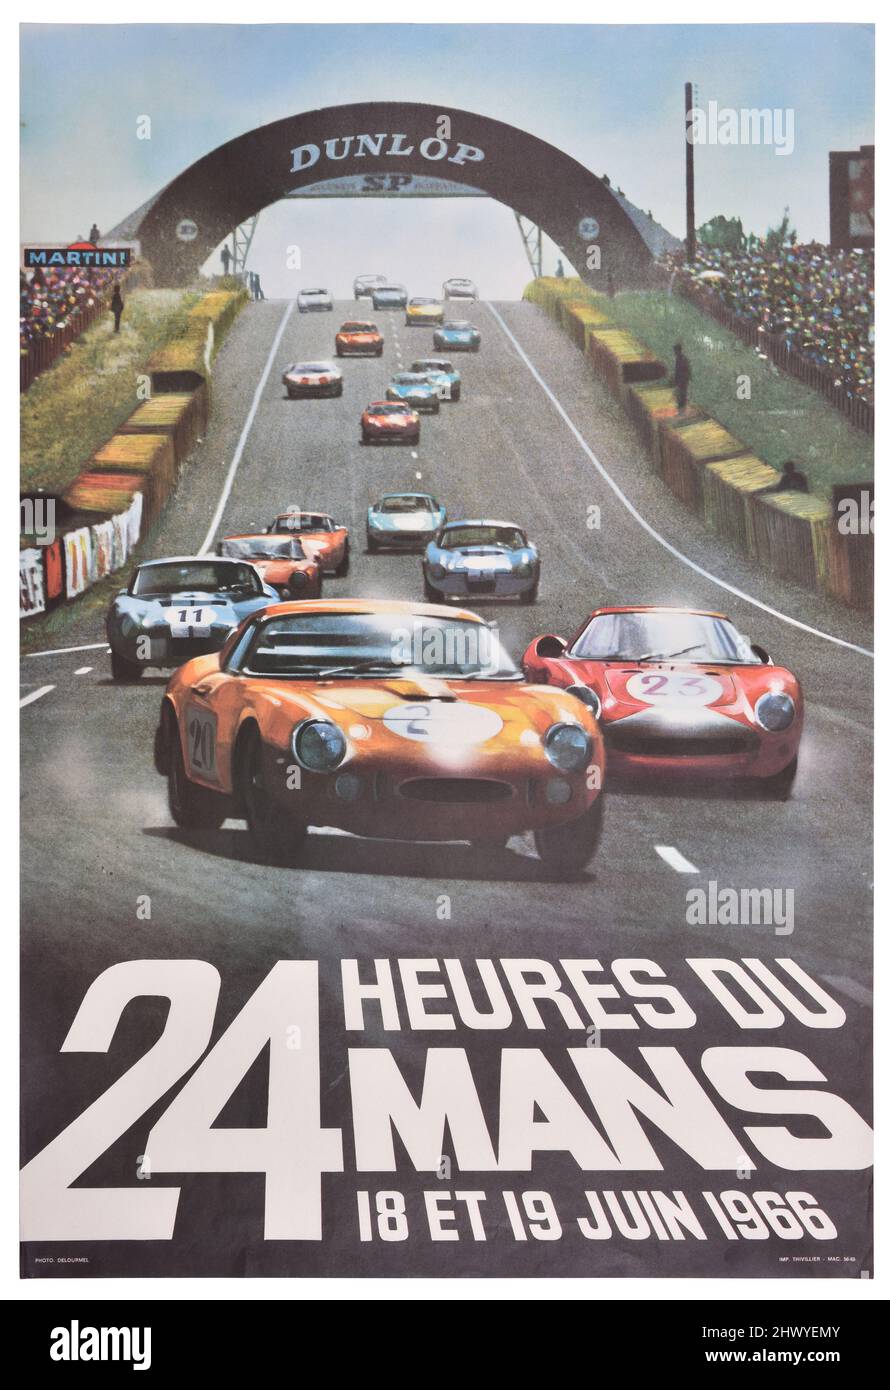 Cartel publicitario francés para '24 Heures du Mans' 1966 evento de carreras de automóviles Foto de stock